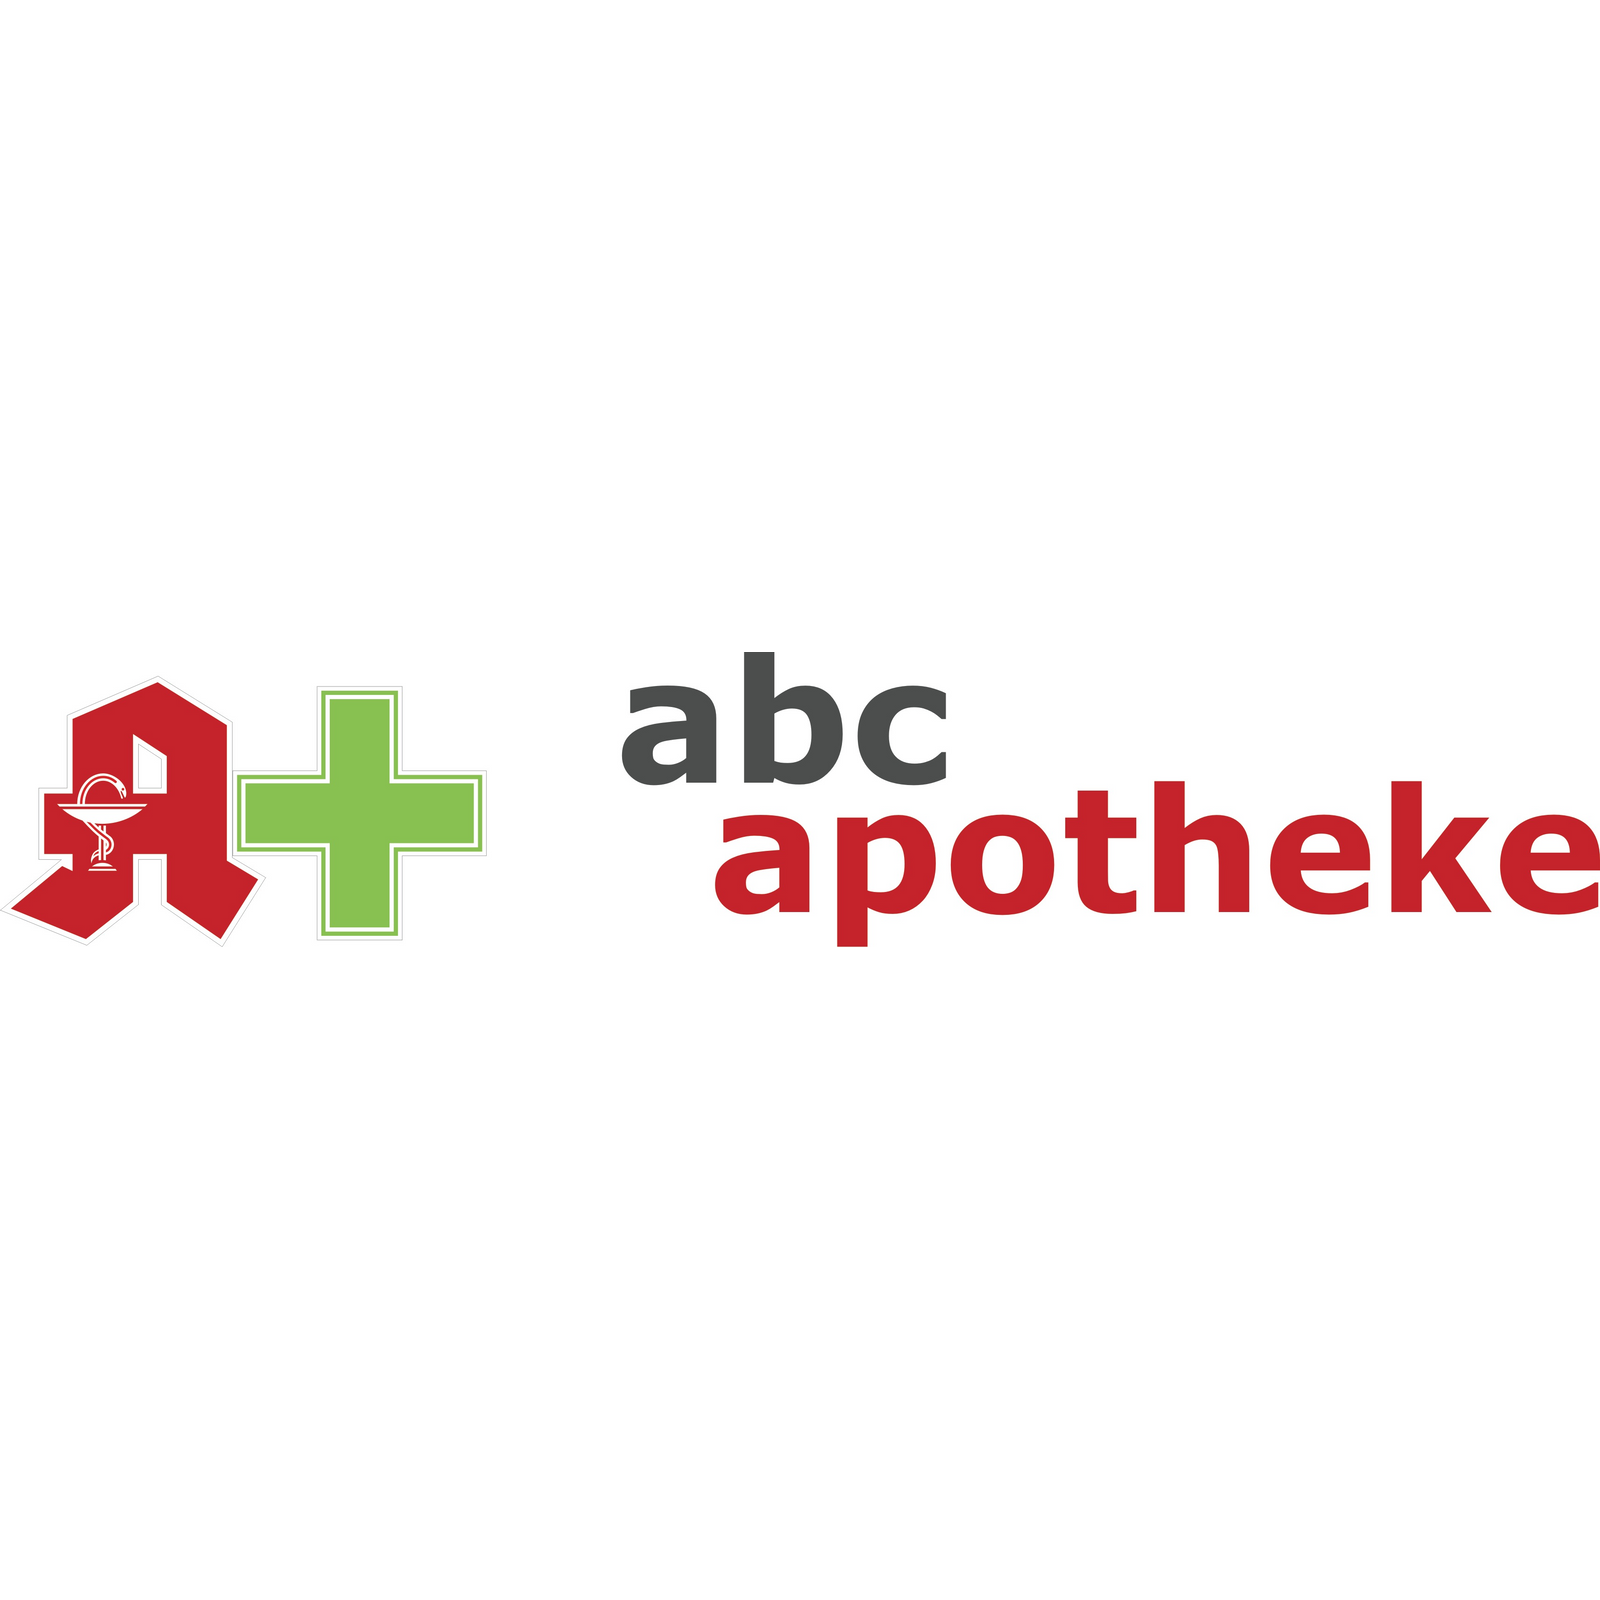 abc apotheke in Herten in Westfalen - Logo